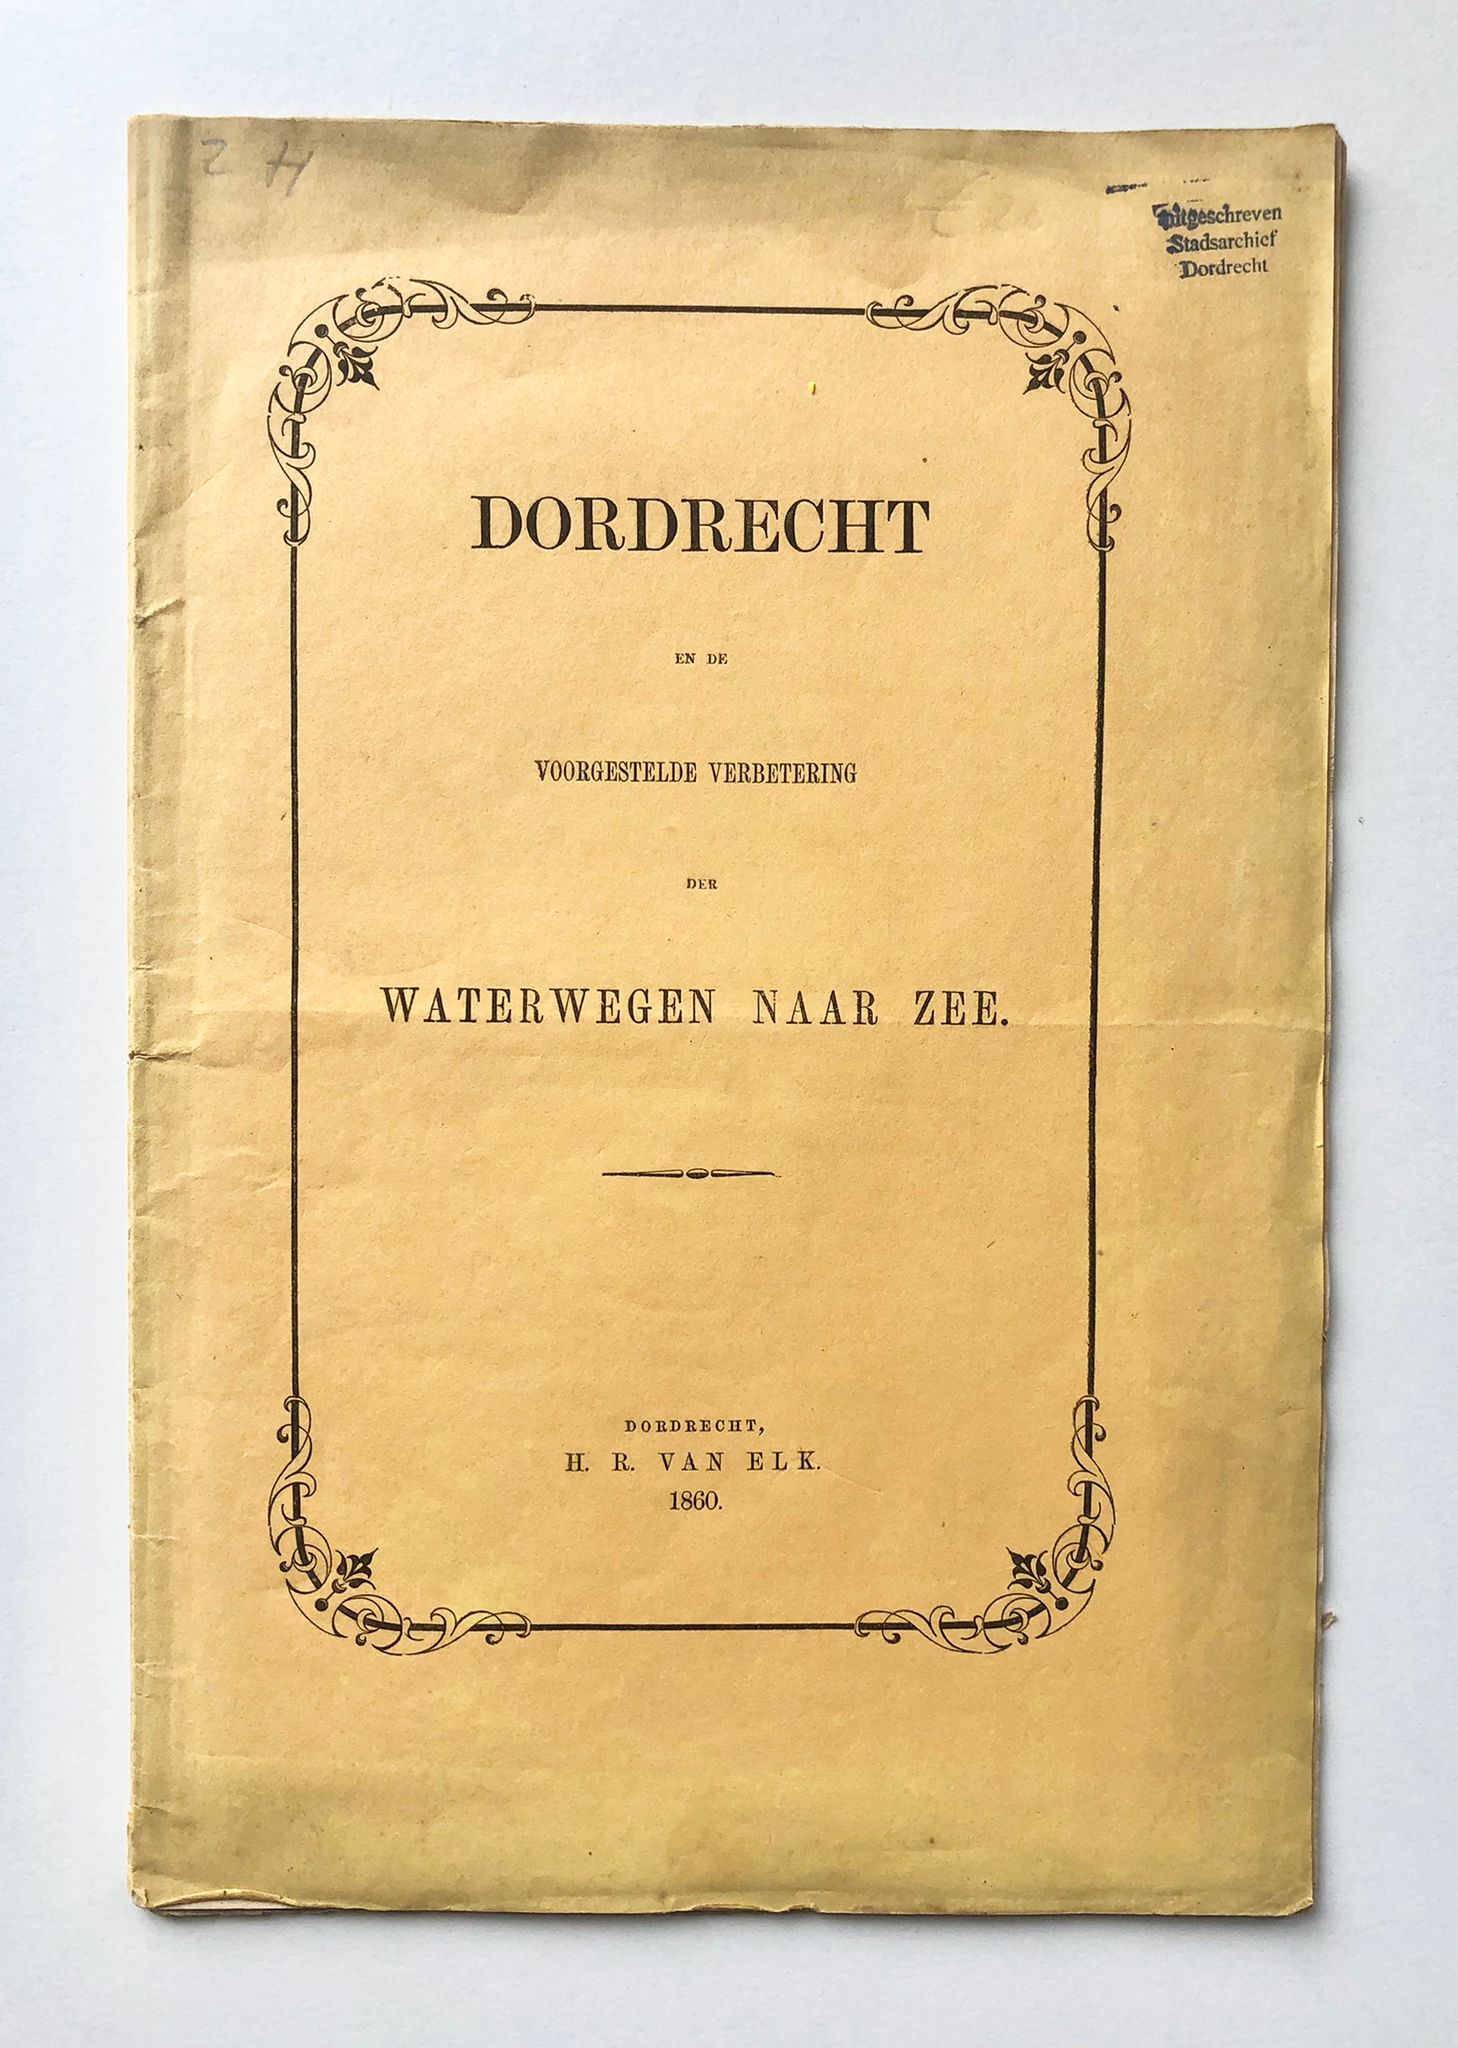 [Dordrecht, Zuid-Holland] Dordrecht en de voorgestelde verbetering der Waterwegen naar Zee, Door D. S. Dz. Den 3 December 1860, H. R. van Elk, Dordrecht, 1860, 29 pp.